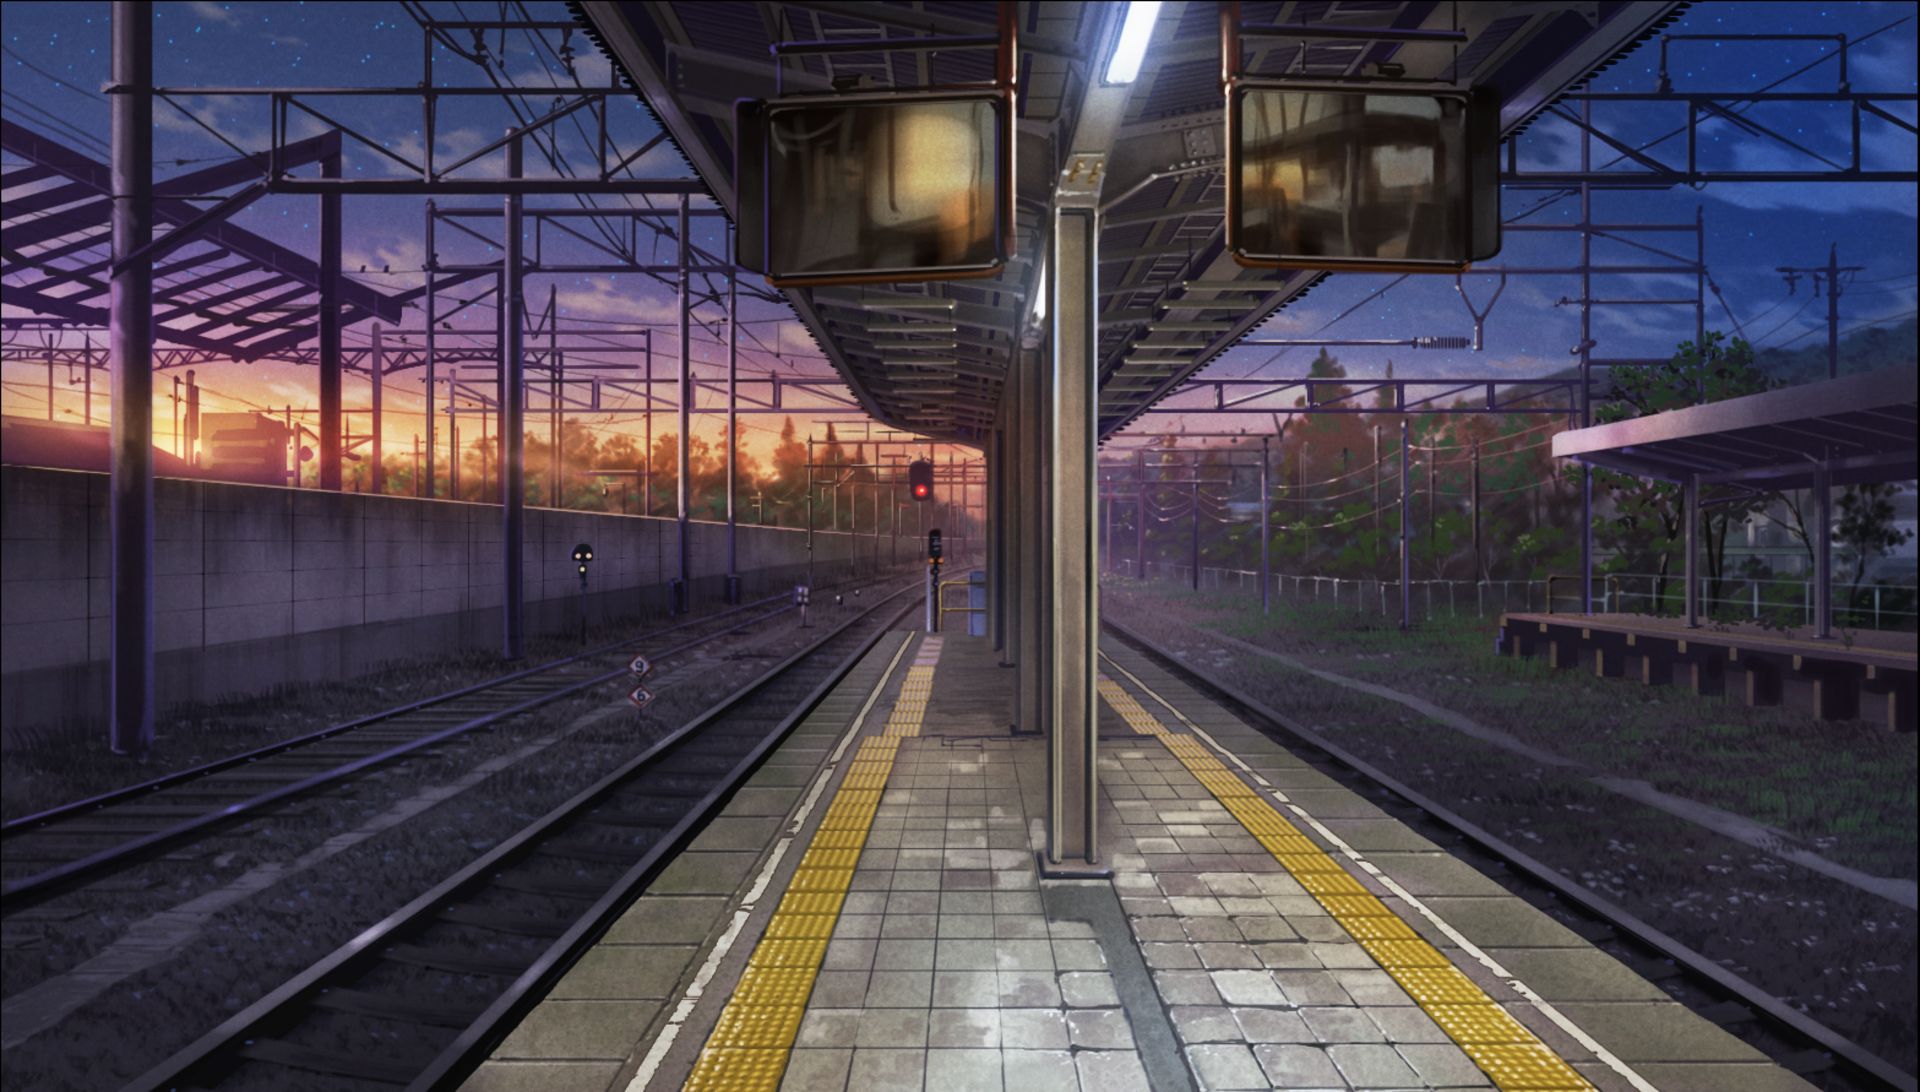 Wallpaper : anime, landscape, train station 2362x1575 - AJIraq - 1774489 -  HD Wallpapers - WallHere